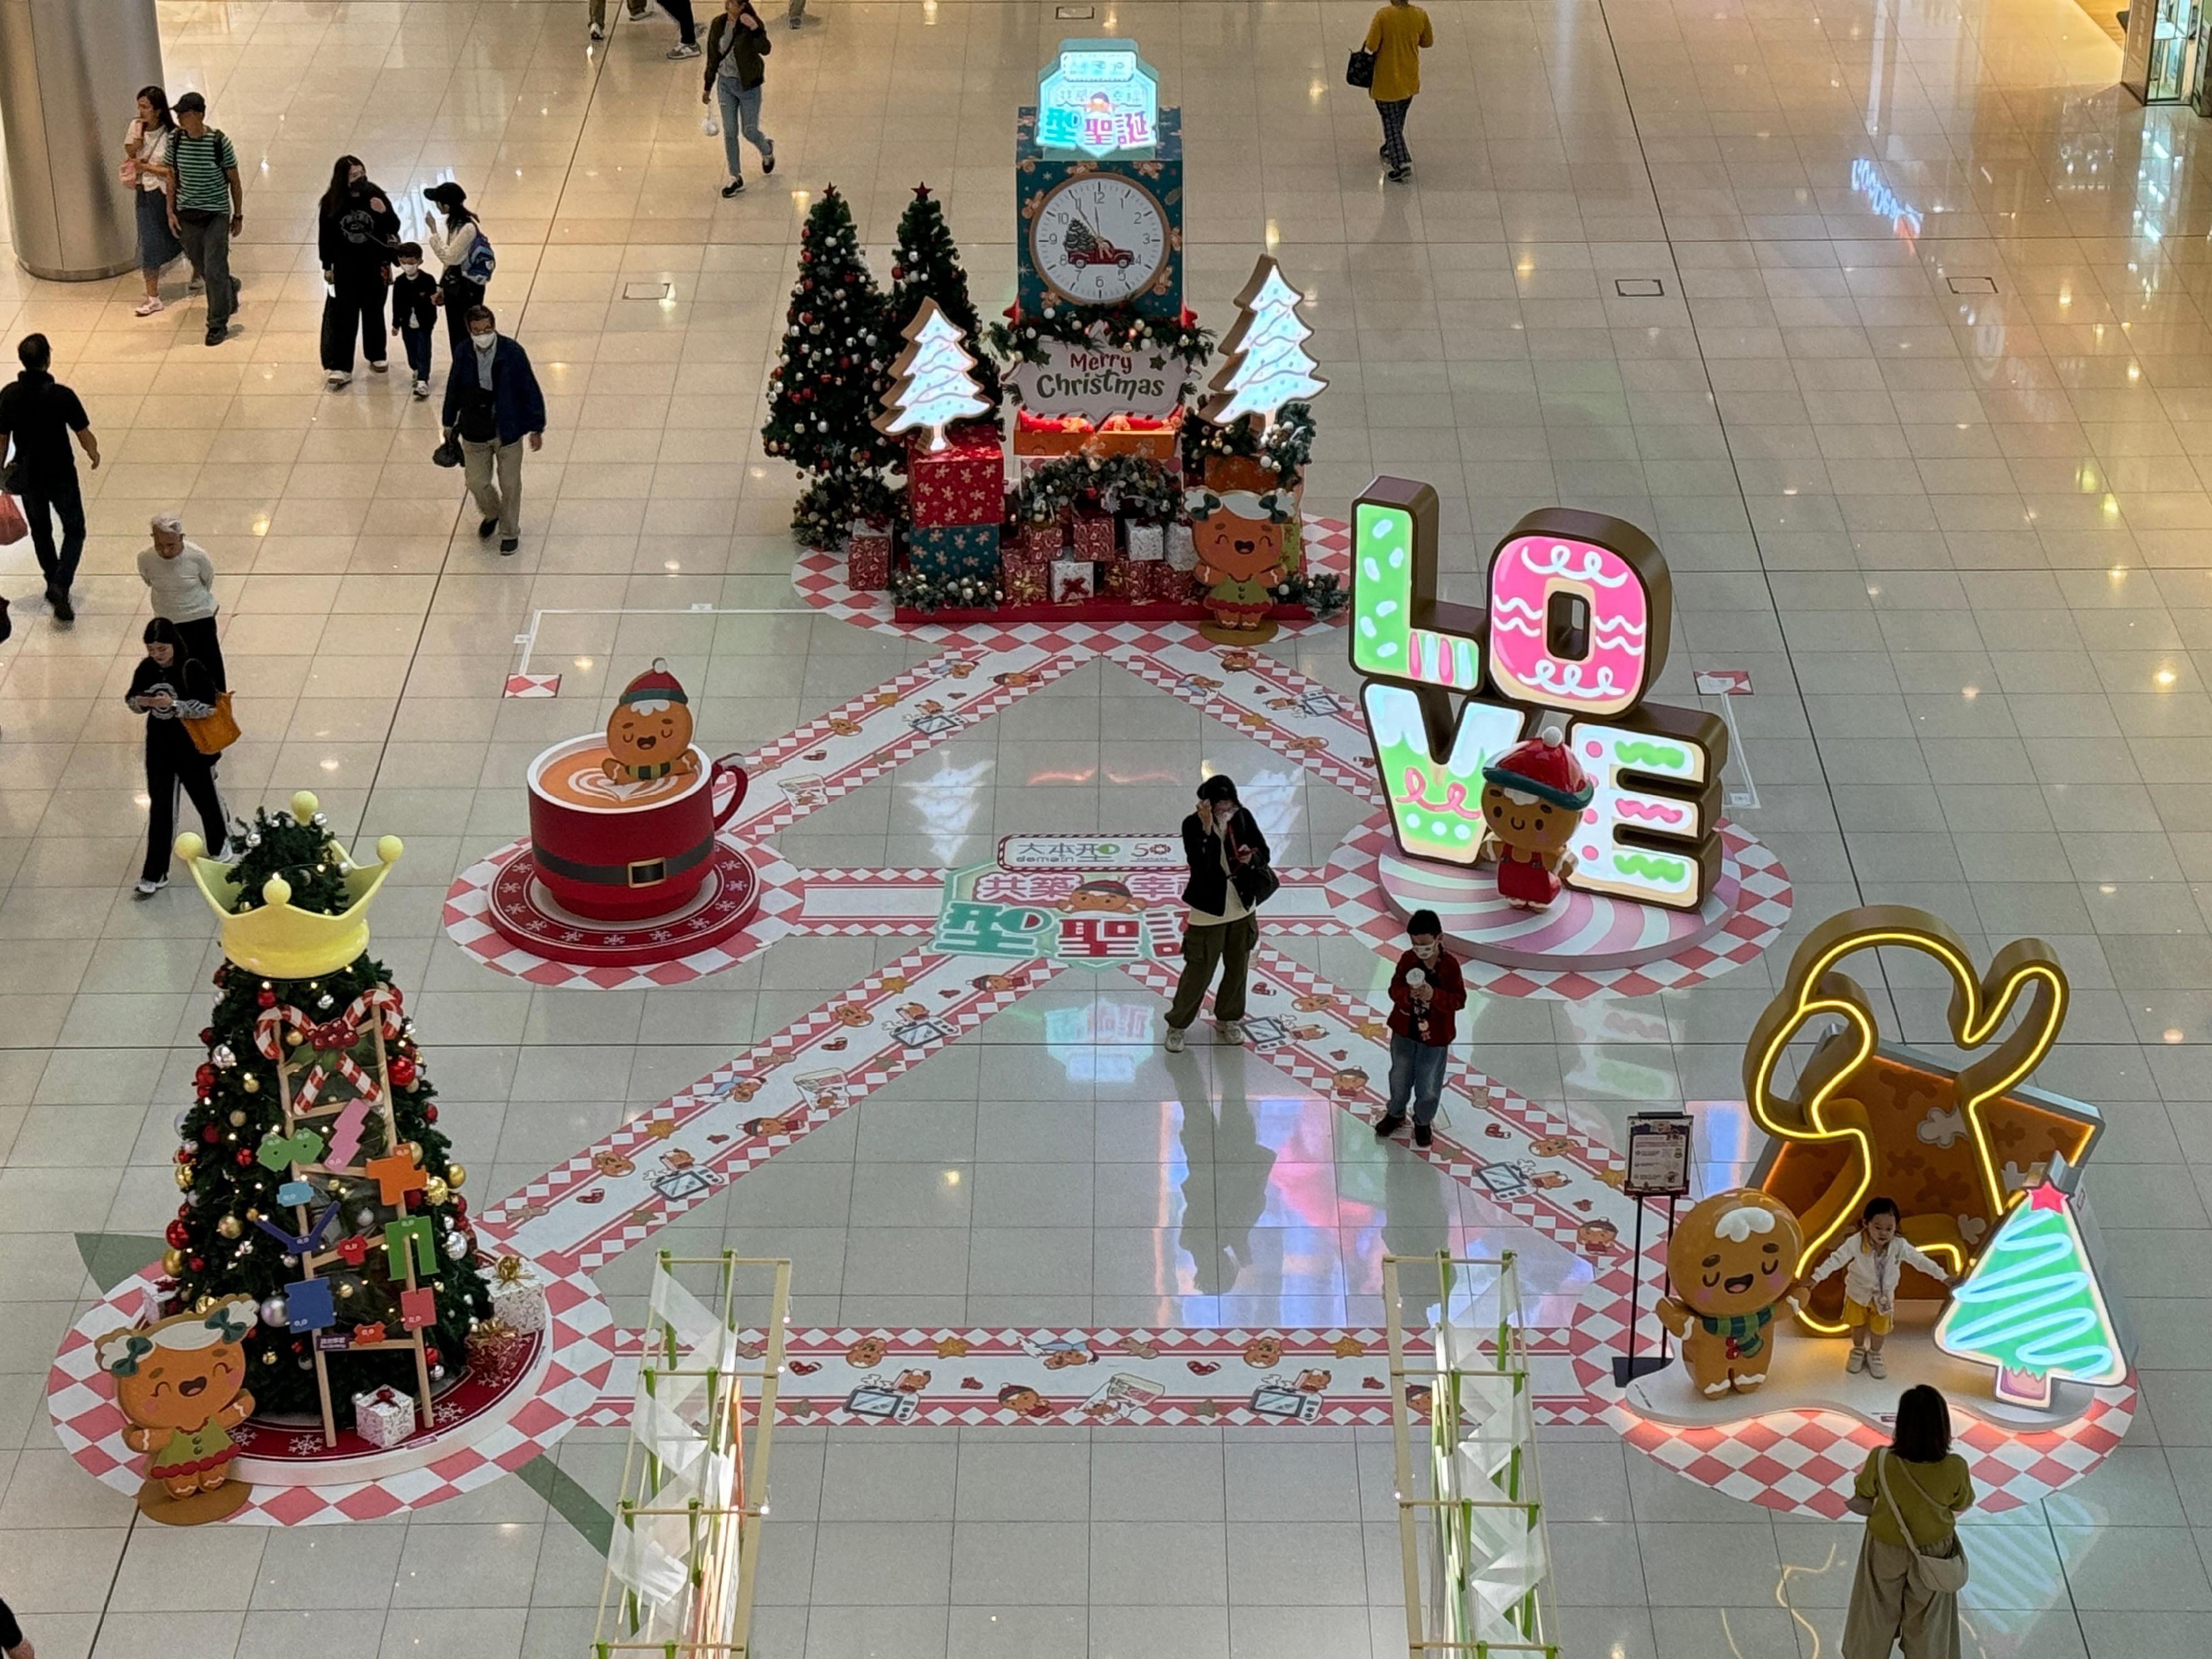 香港房屋委员会（房委会）于辖下多个商场举办圣诞节推广及夜缤纷活动，与市民欢度圣诞。图示房委会位于油塘的区域商场大本型于地下中庭以姜饼人家族为主题的圣诞装置。